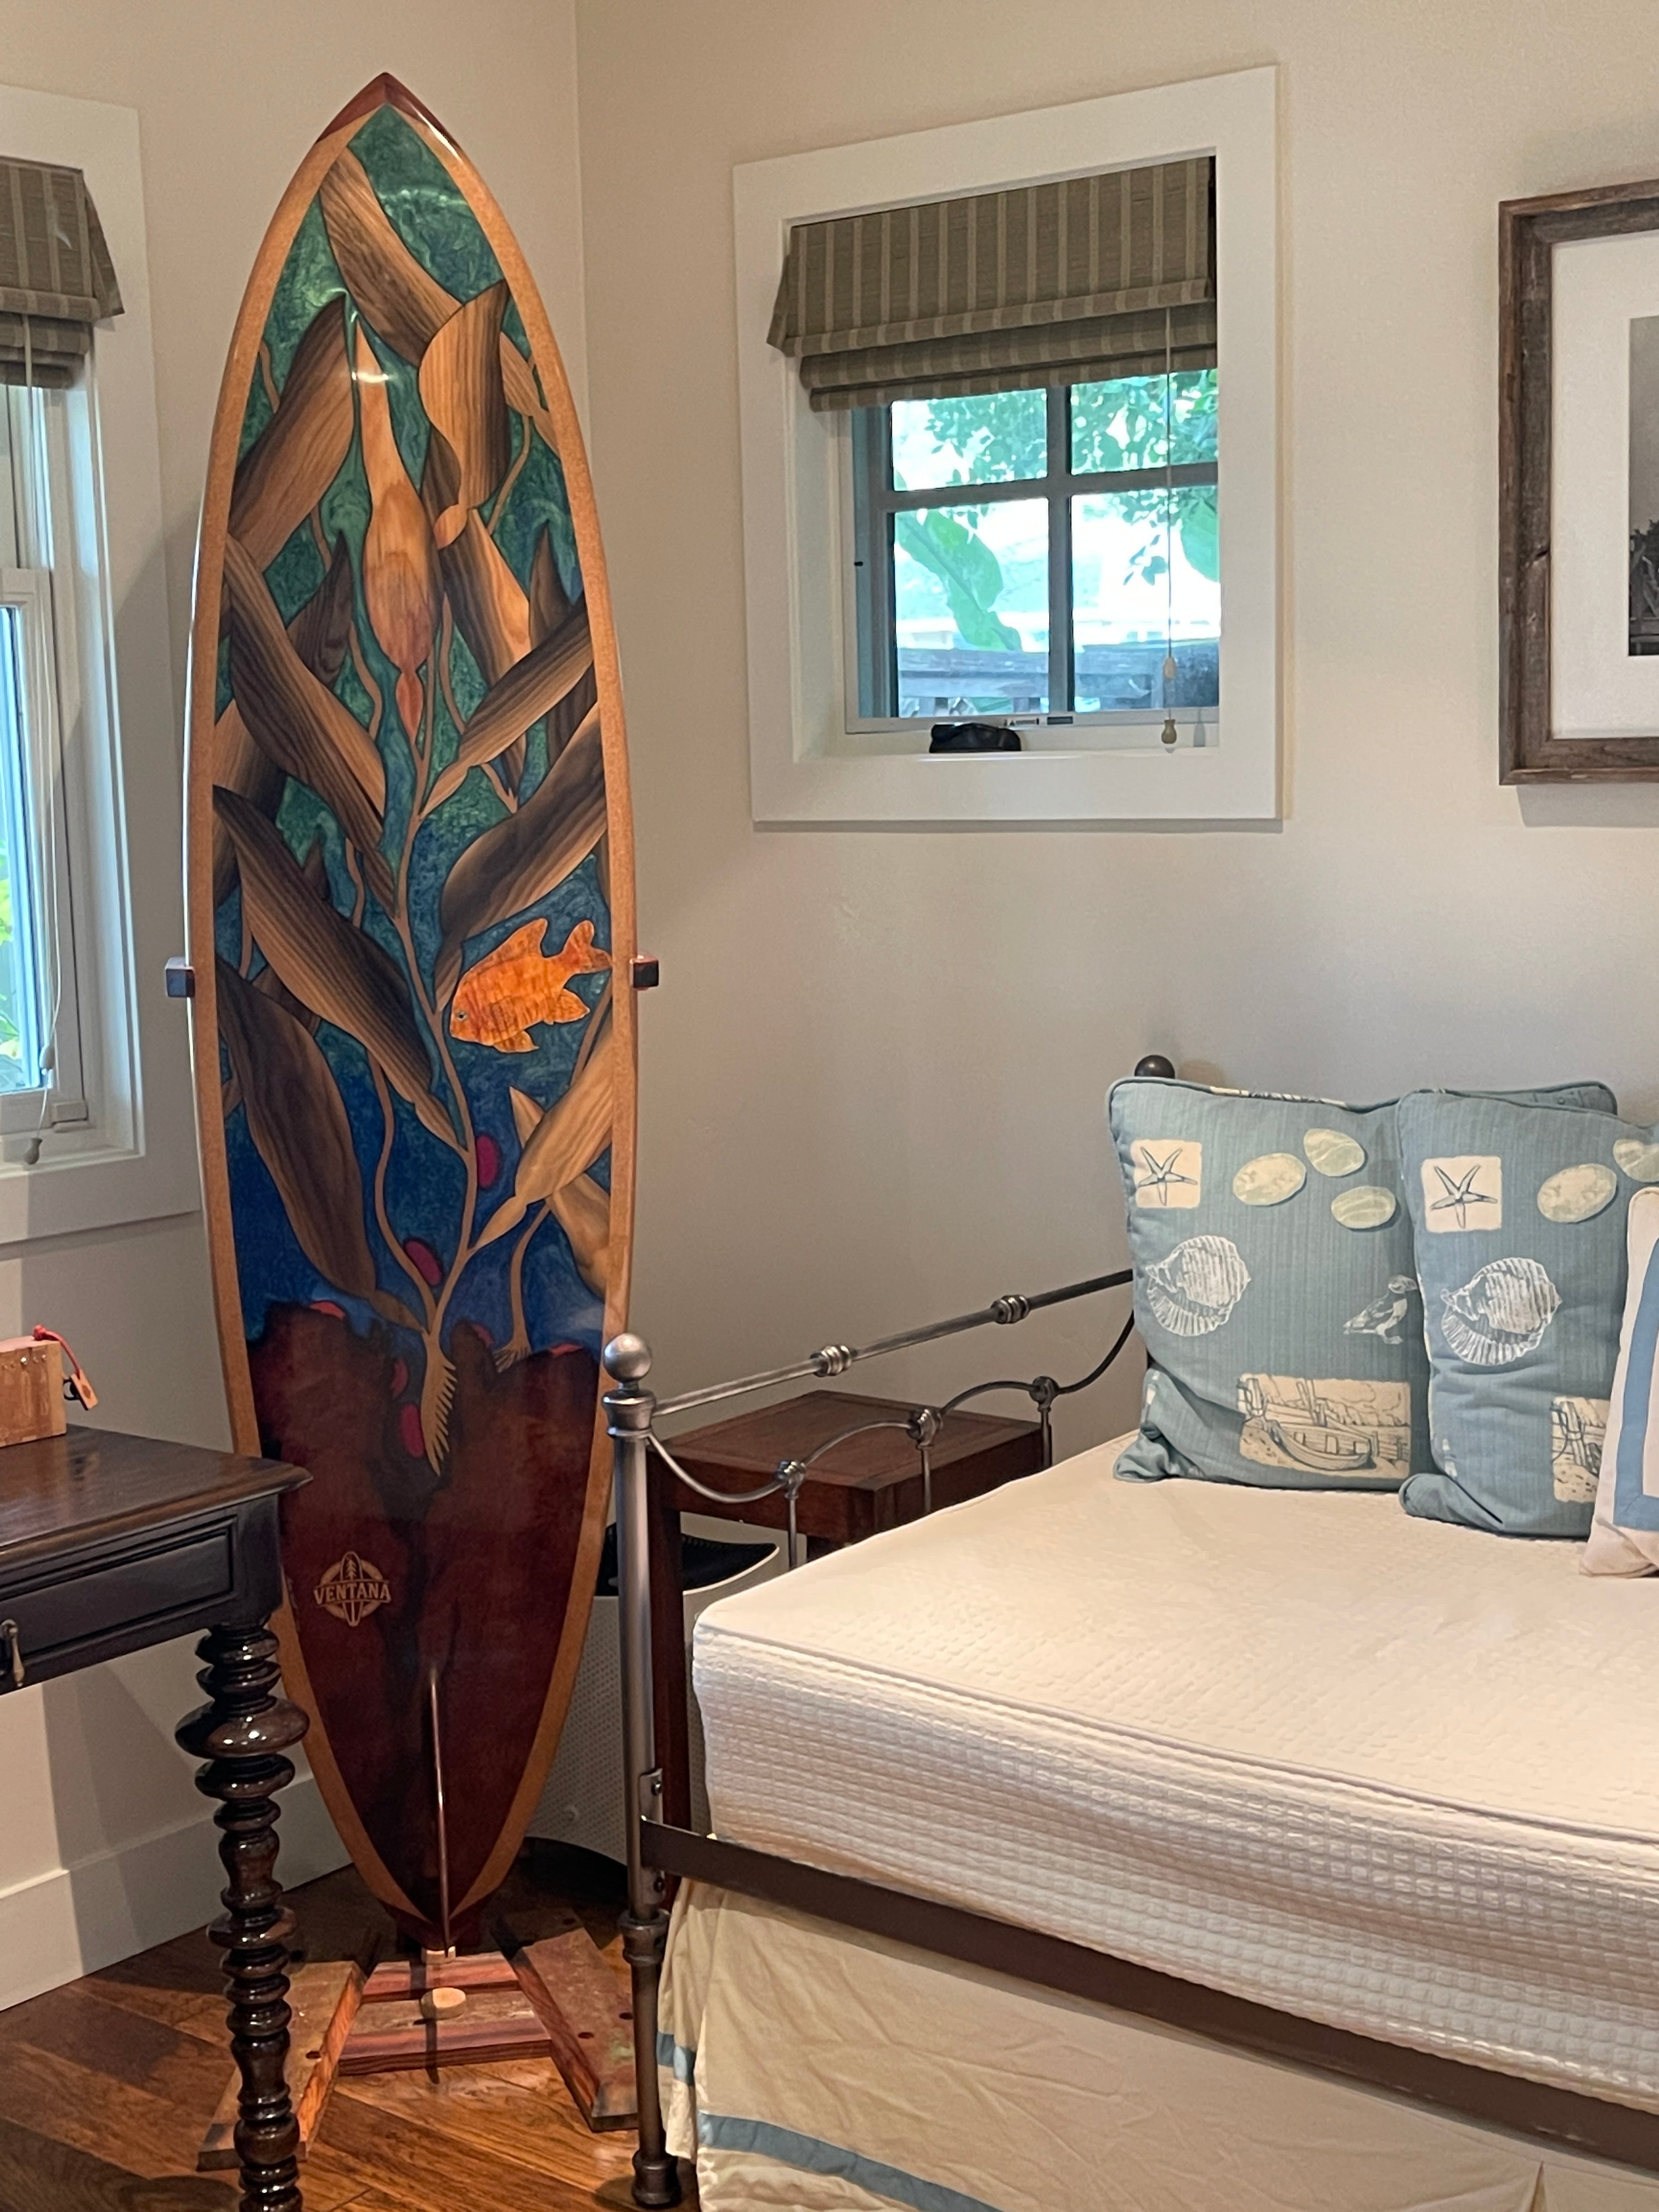 Surfboard Wall Mounts &amp; Floor Stands